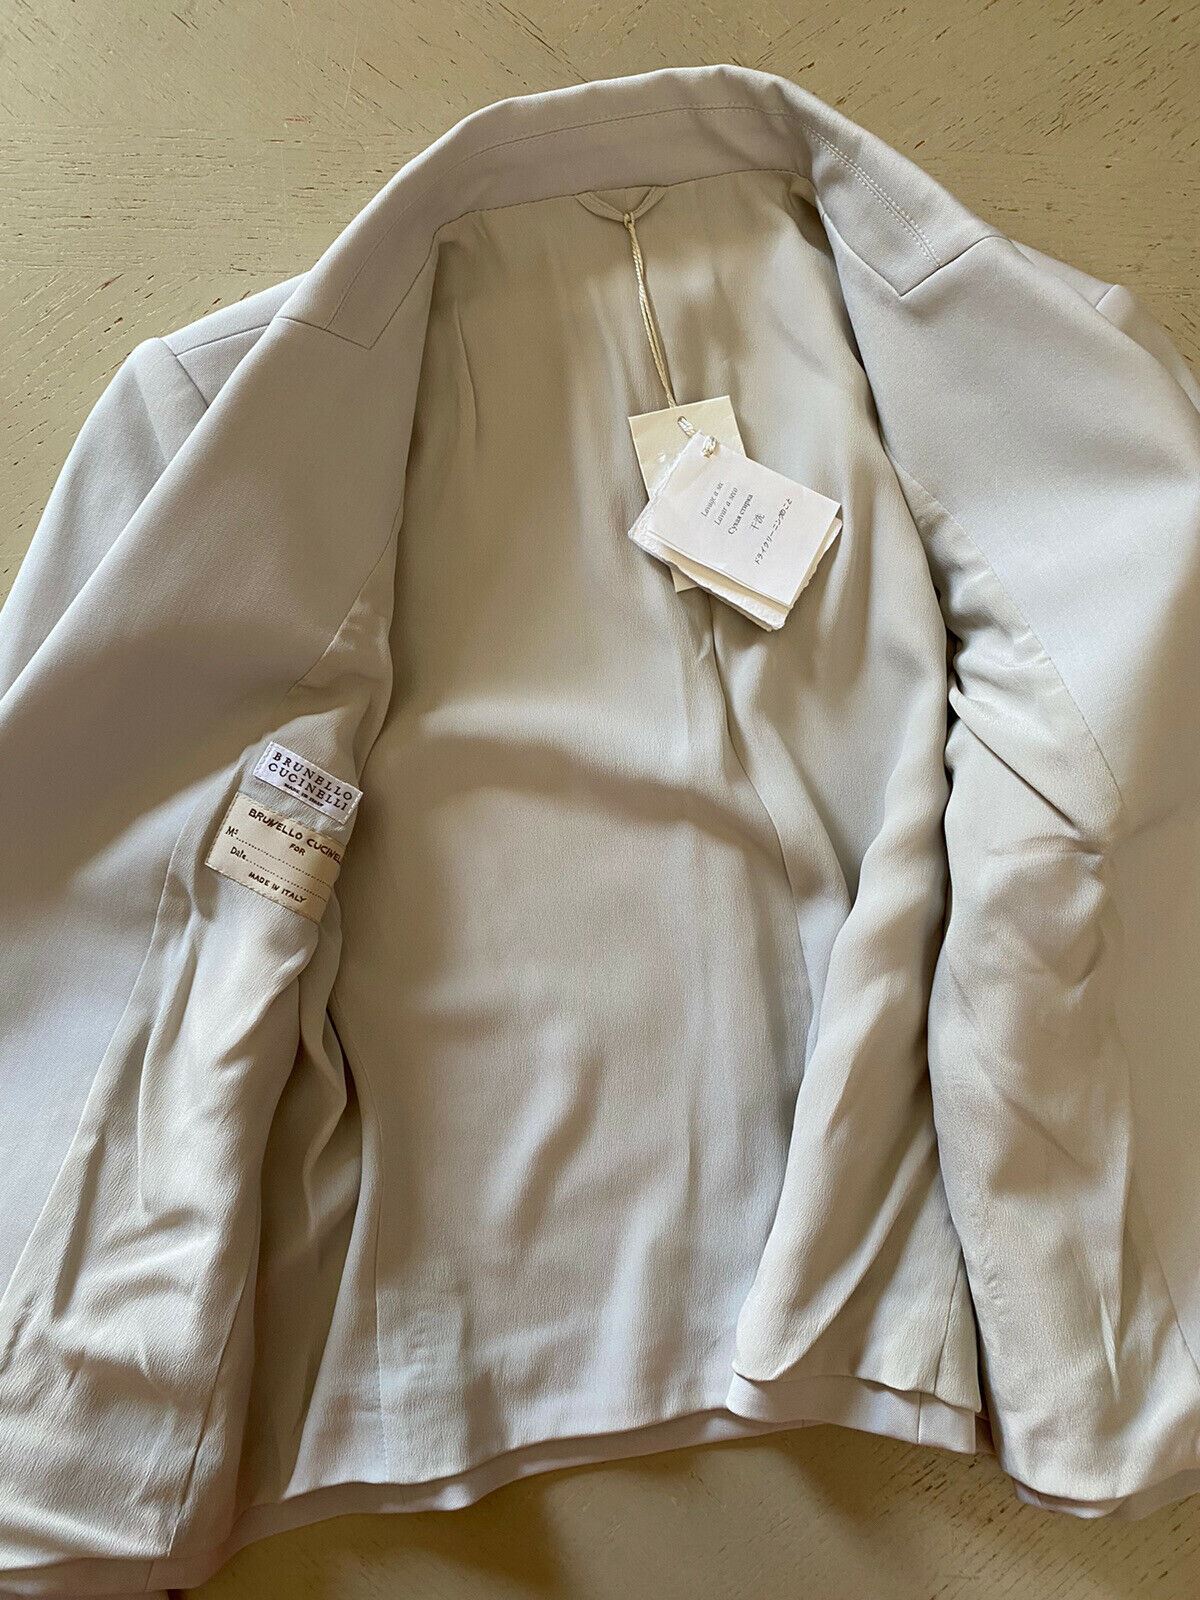 New $3995 Brunello Cucinelli Monili-Trimmed Women Jacket Blazer Salt 46 It/10 US